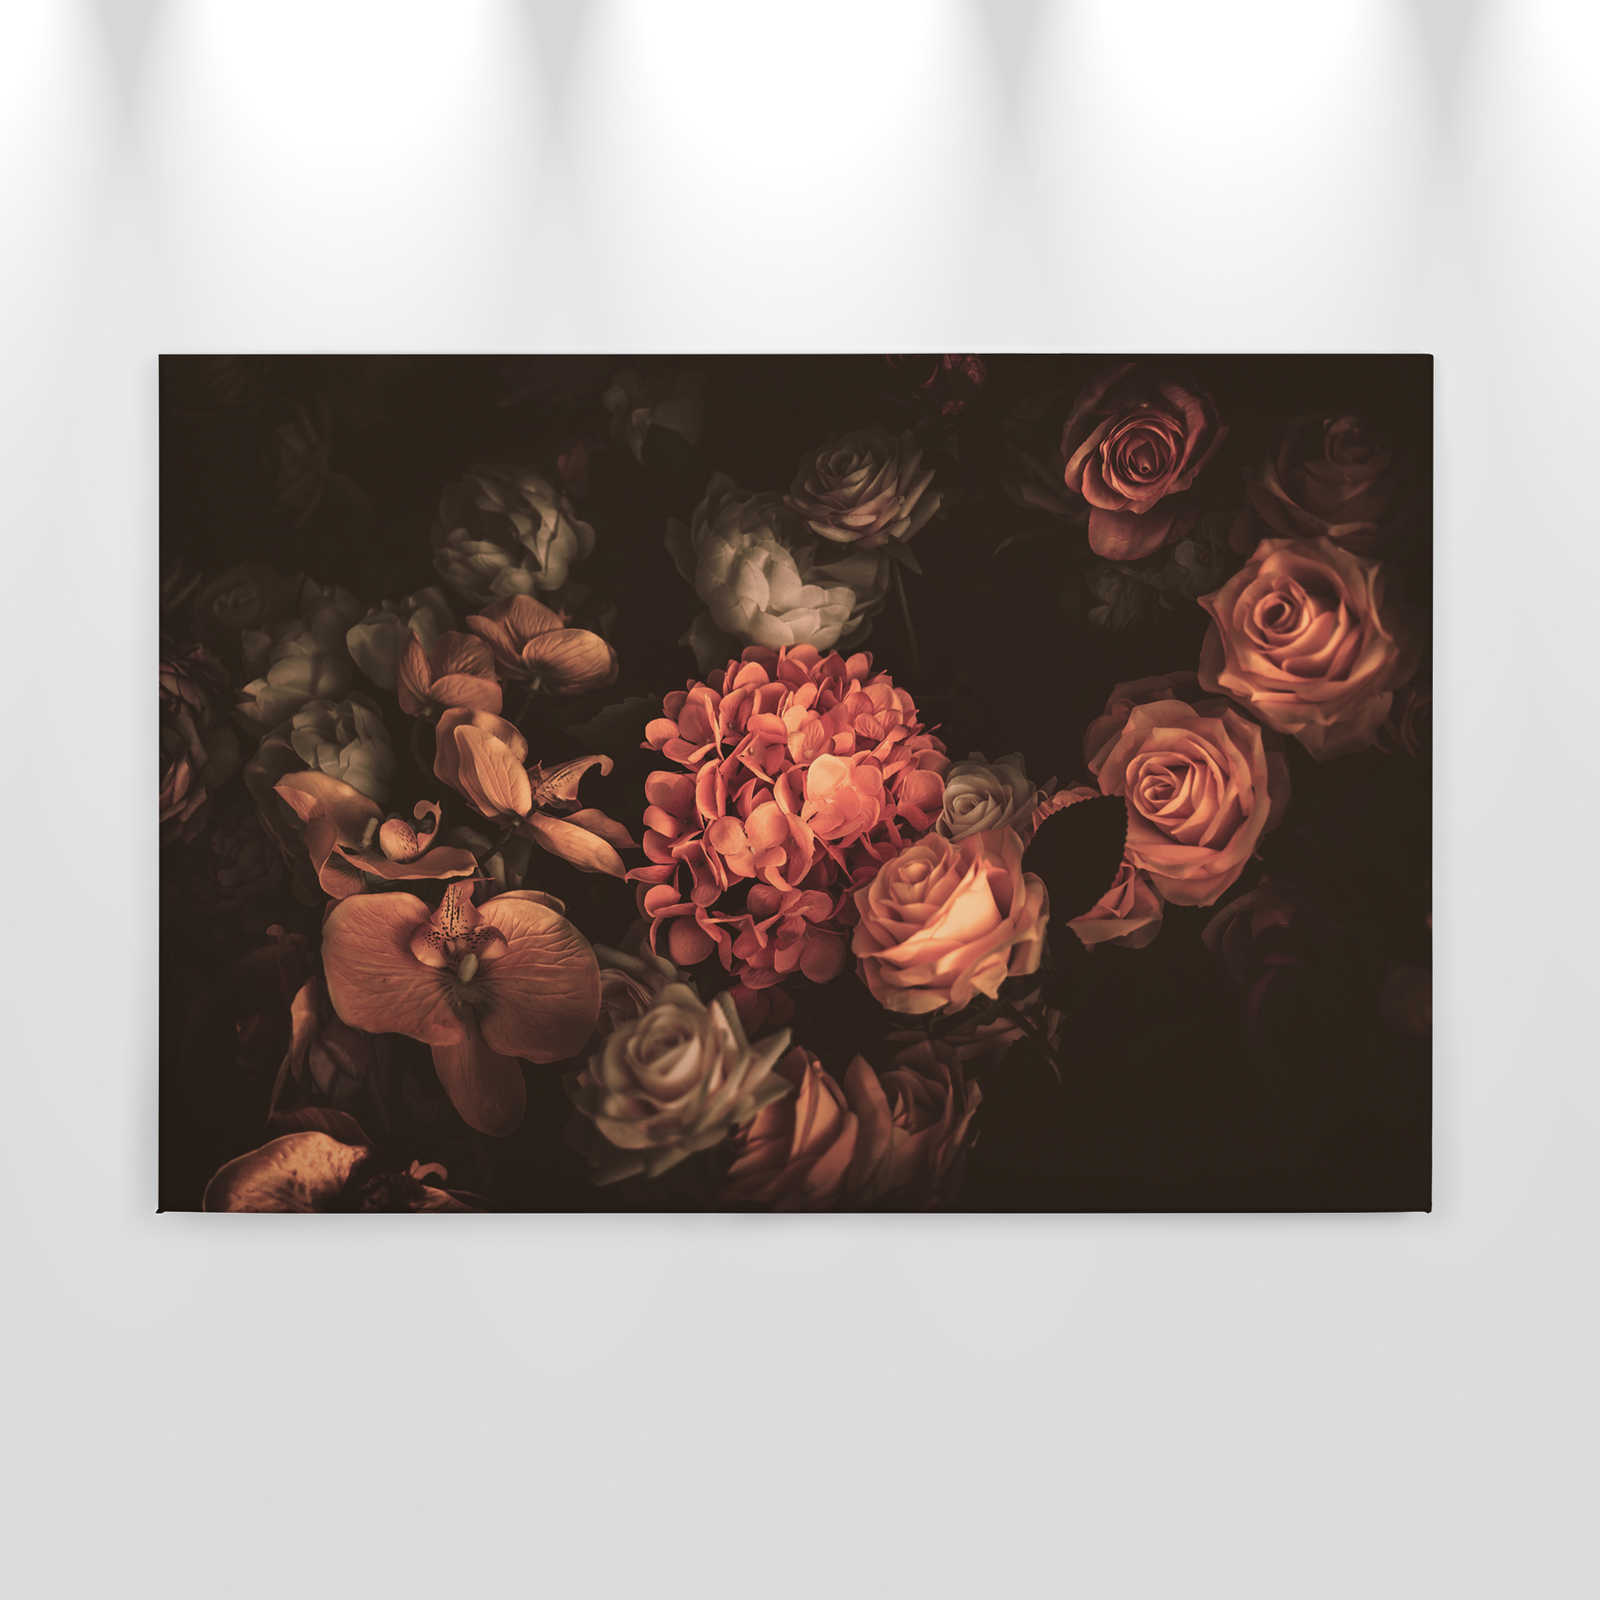             Romantisch canvas met boeket bloemen - 0,90 m x 0,60 m
        